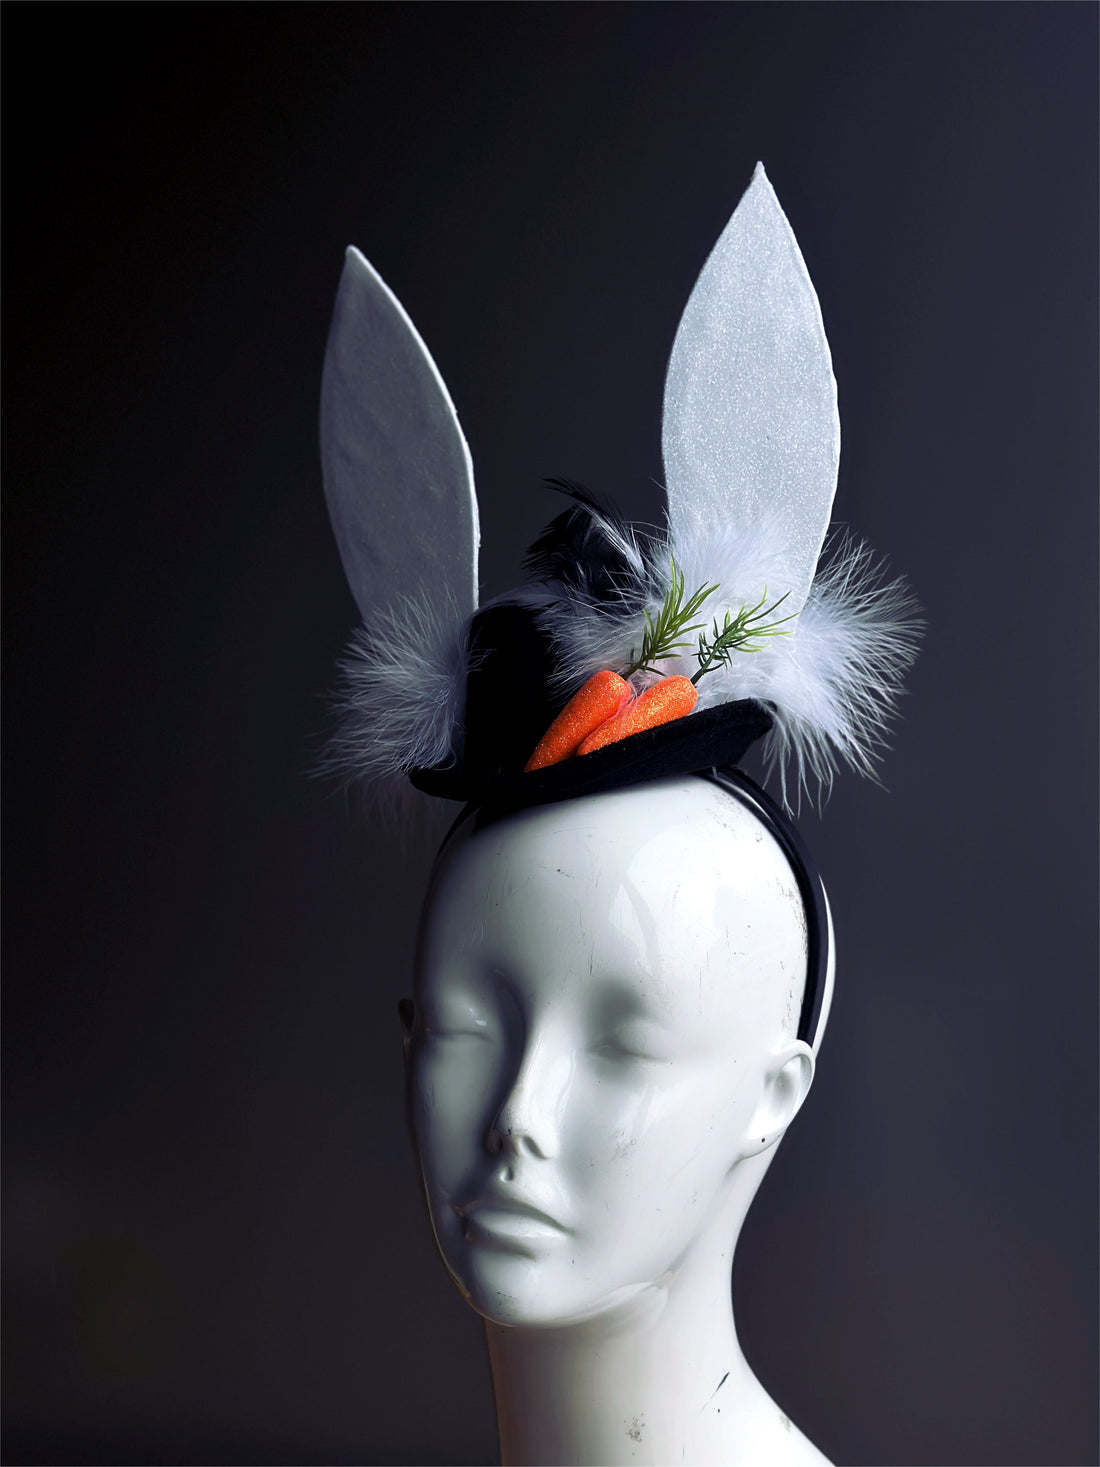 White Rabbit Carrot Hat